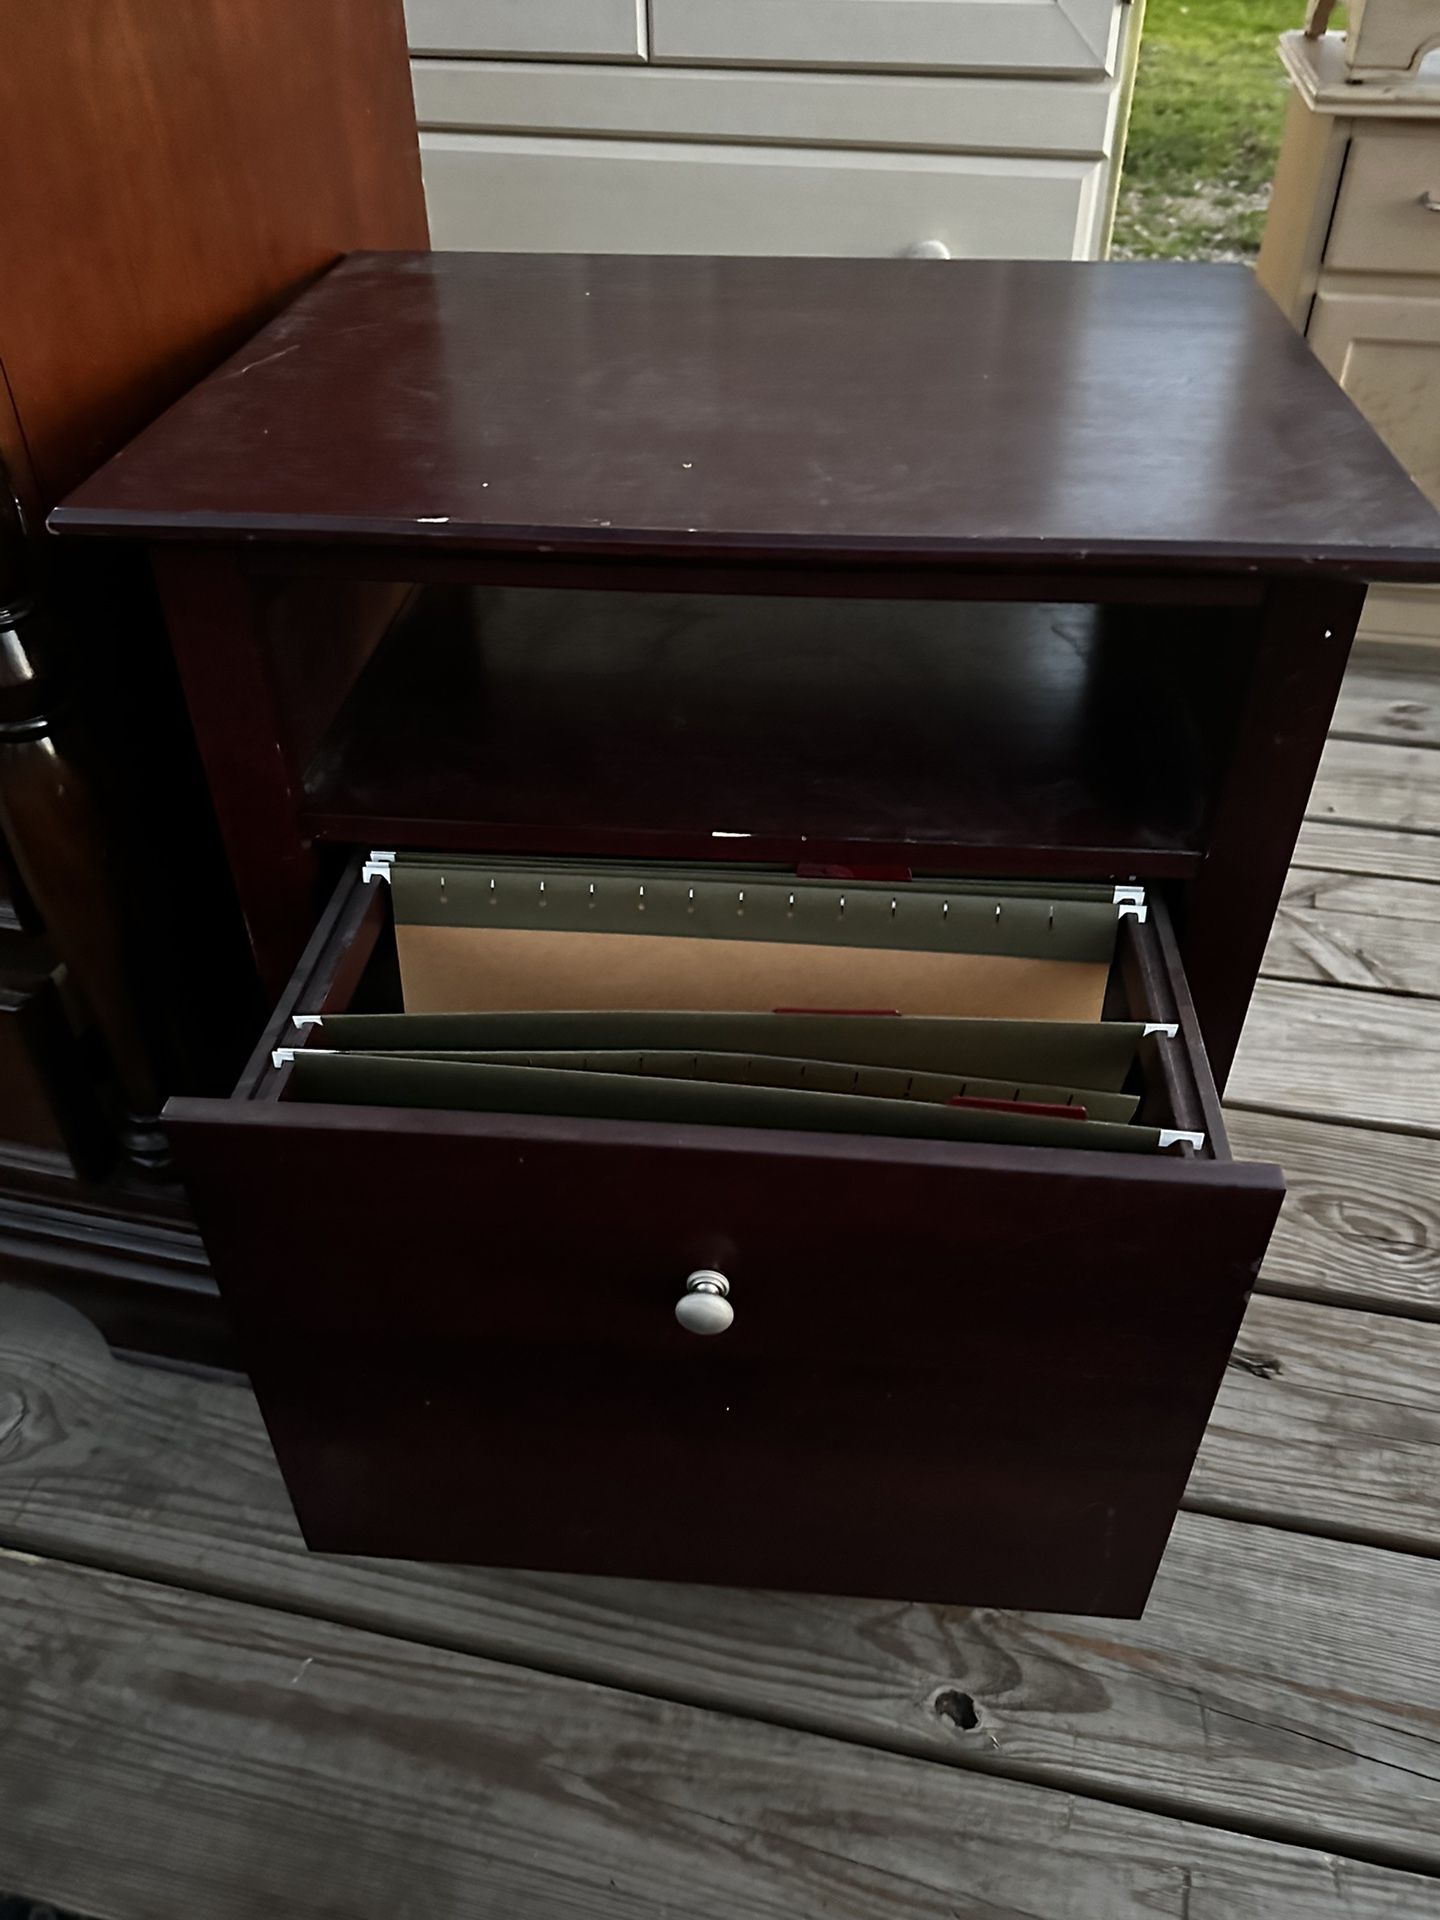 Small File Cabinet 